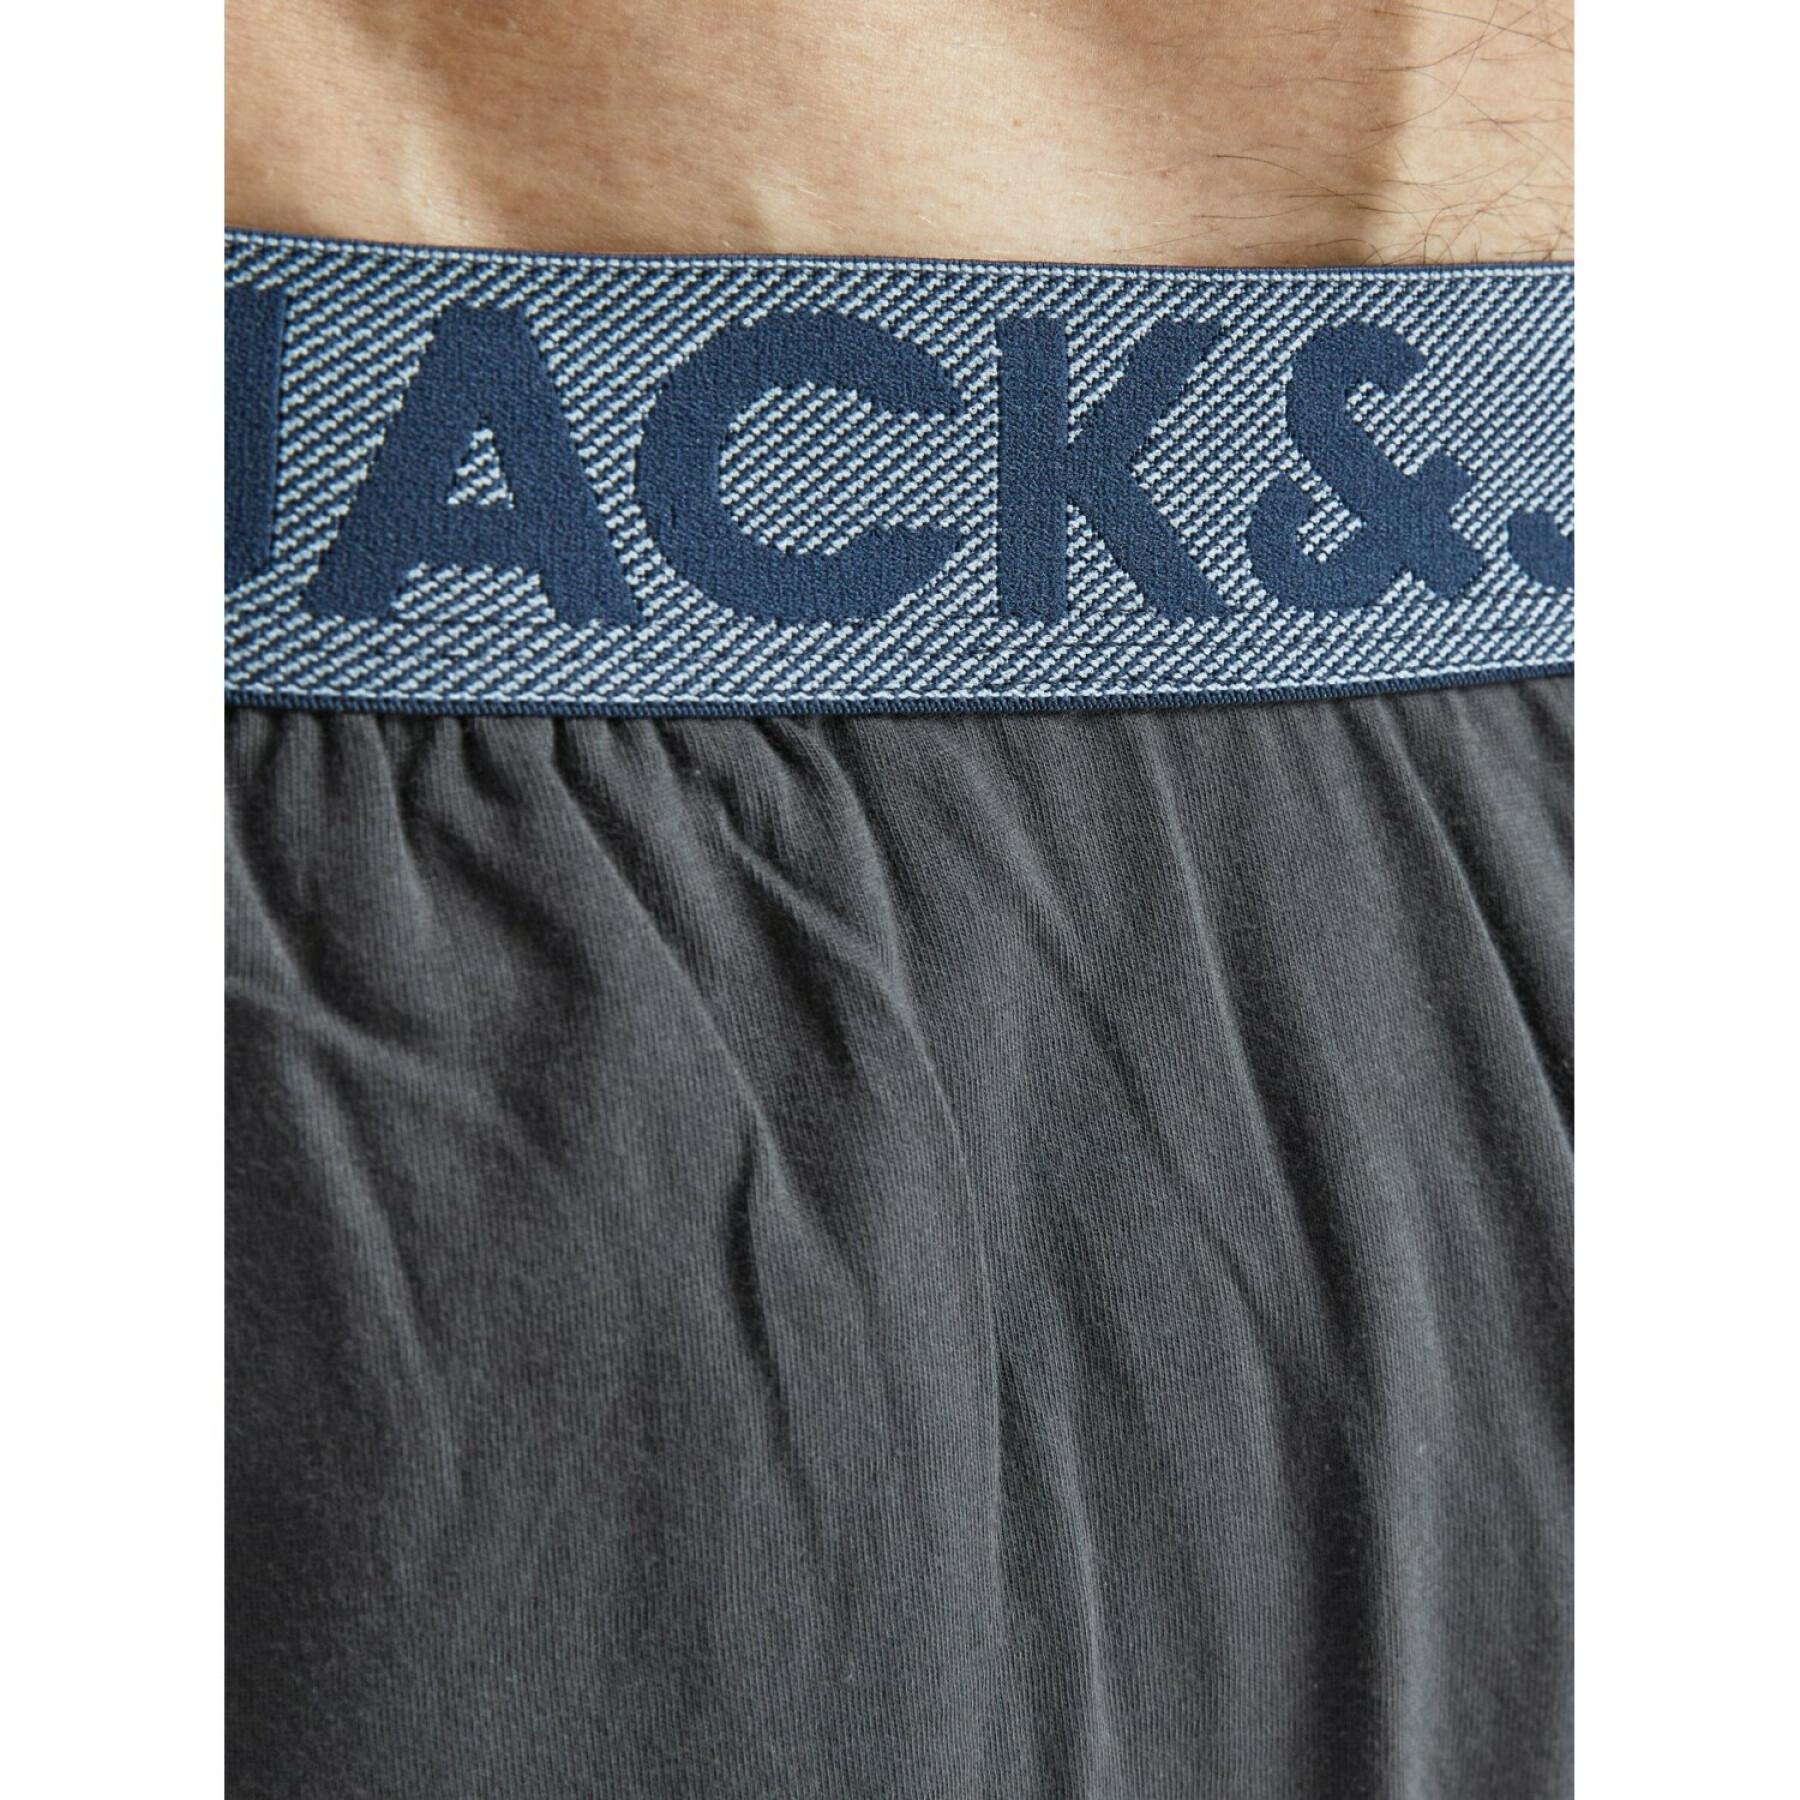 Pantalones de jogging Jack & Jones Tiki